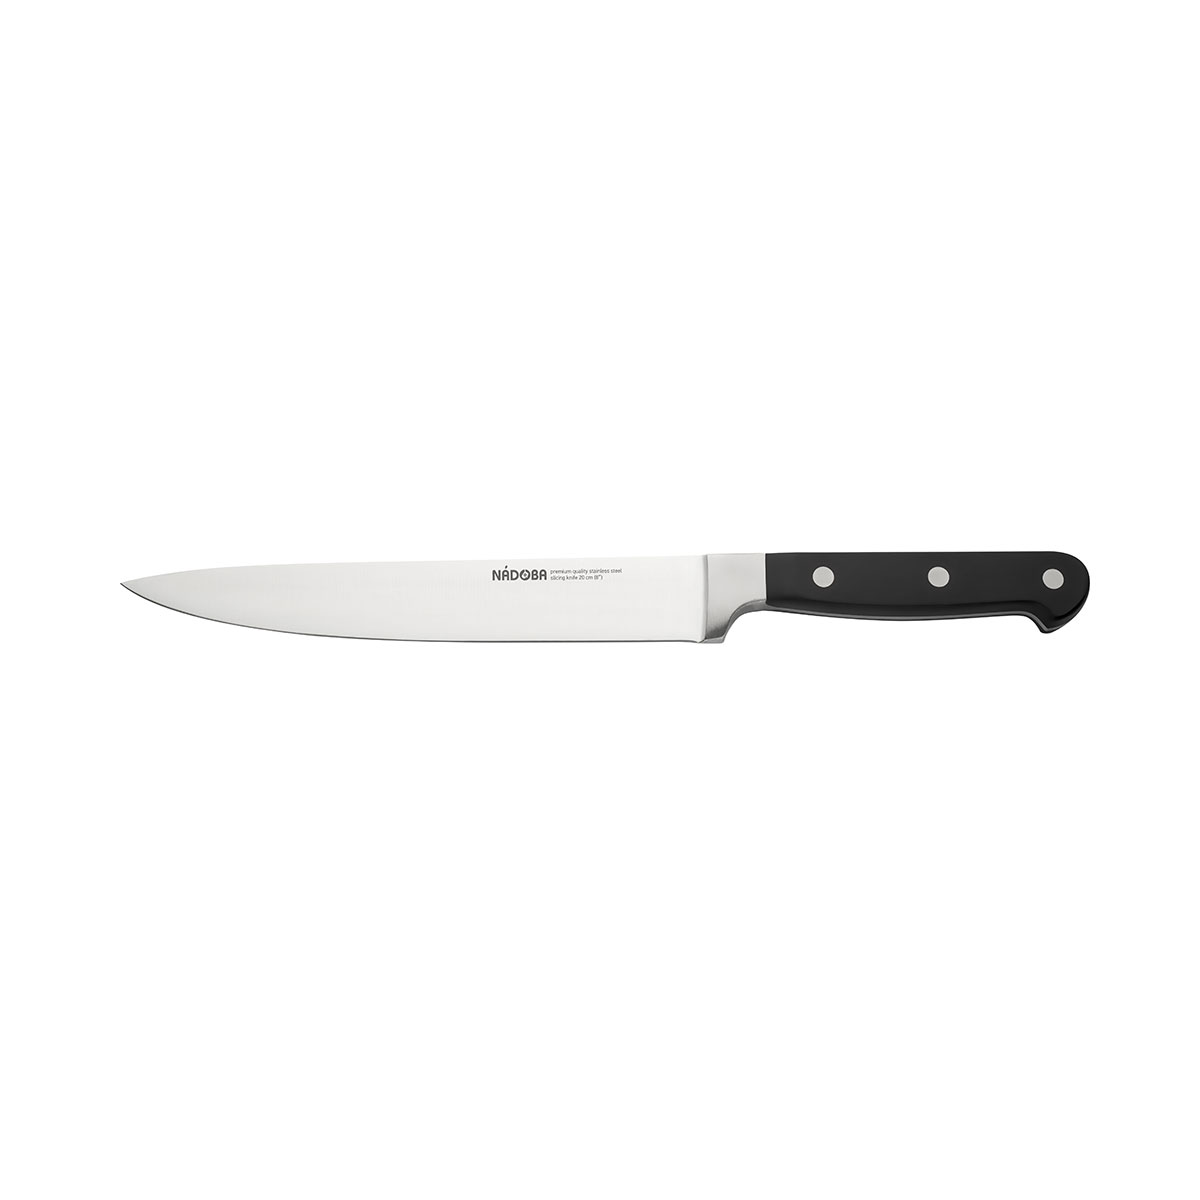 Нож Nadoba разделочный 724212, 20 см нож кухонный сталь n 690 кориан ваниль скрим шоу